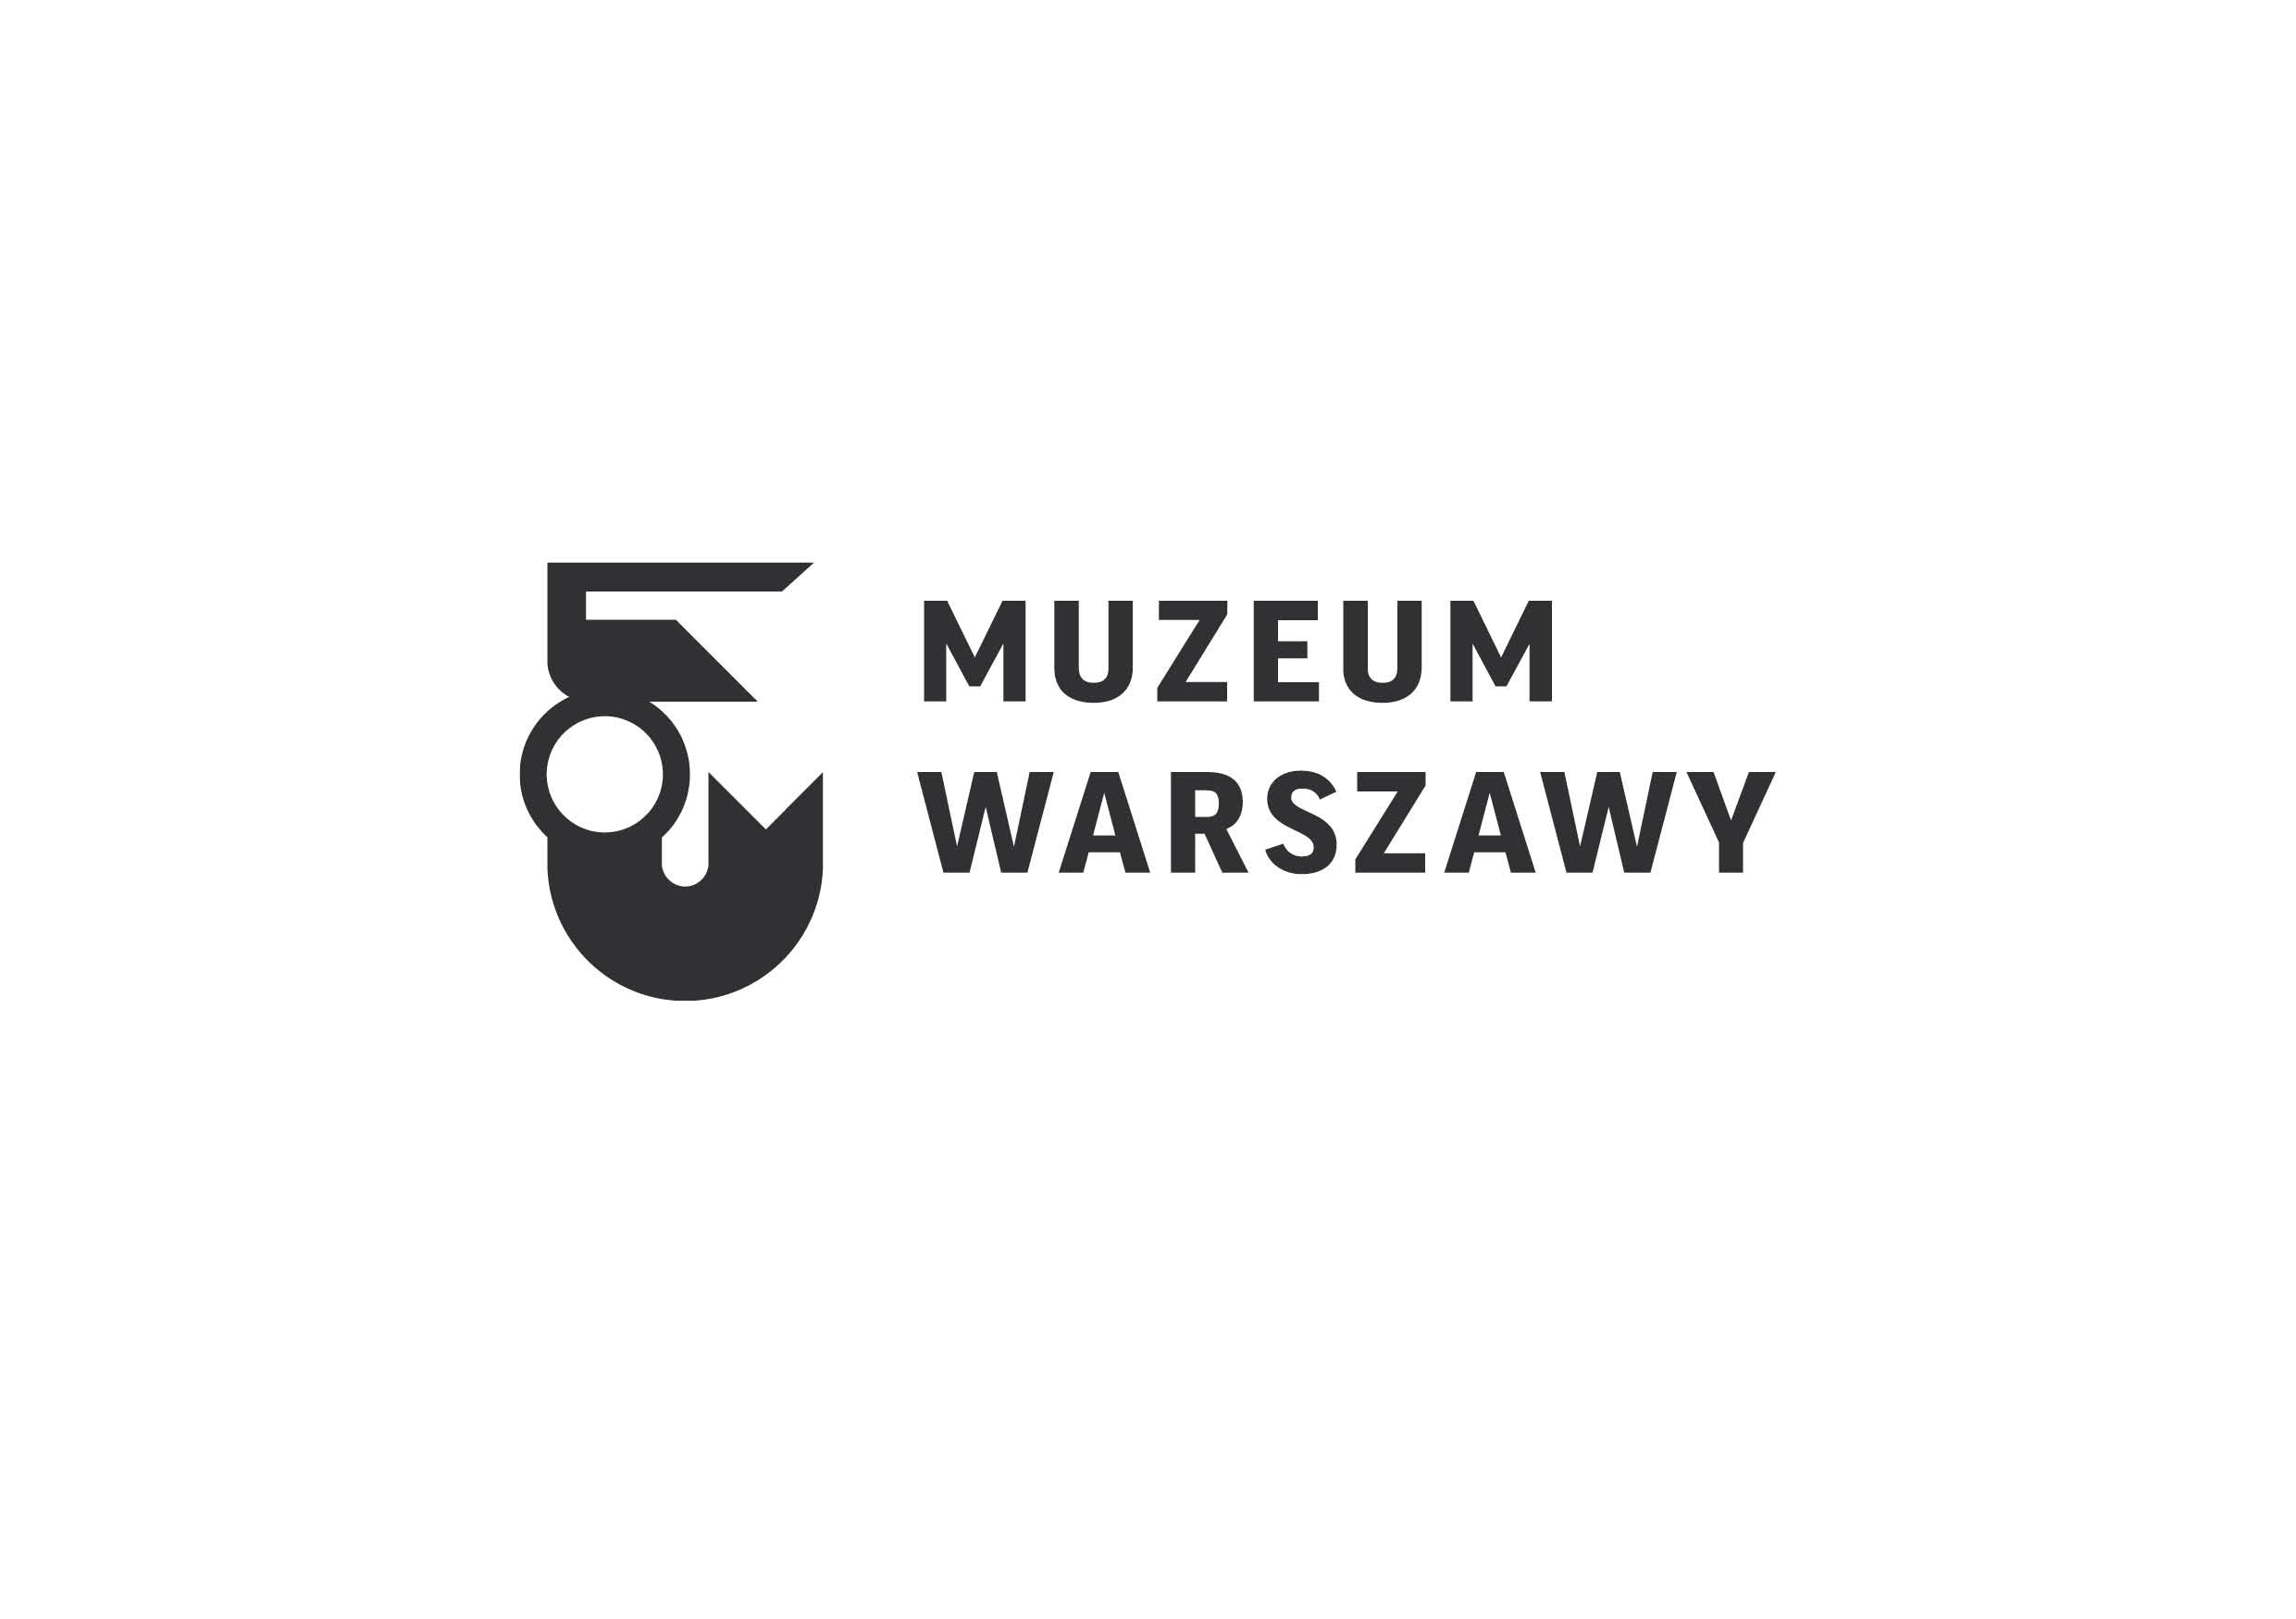 Logotyp Muzeum Warszawy - po lewej kształt syrenki z tarczą i mieczem uniesionym nad głową, po prawej napis: MUZEUM WARSZAWY (w dwóch linijkach).